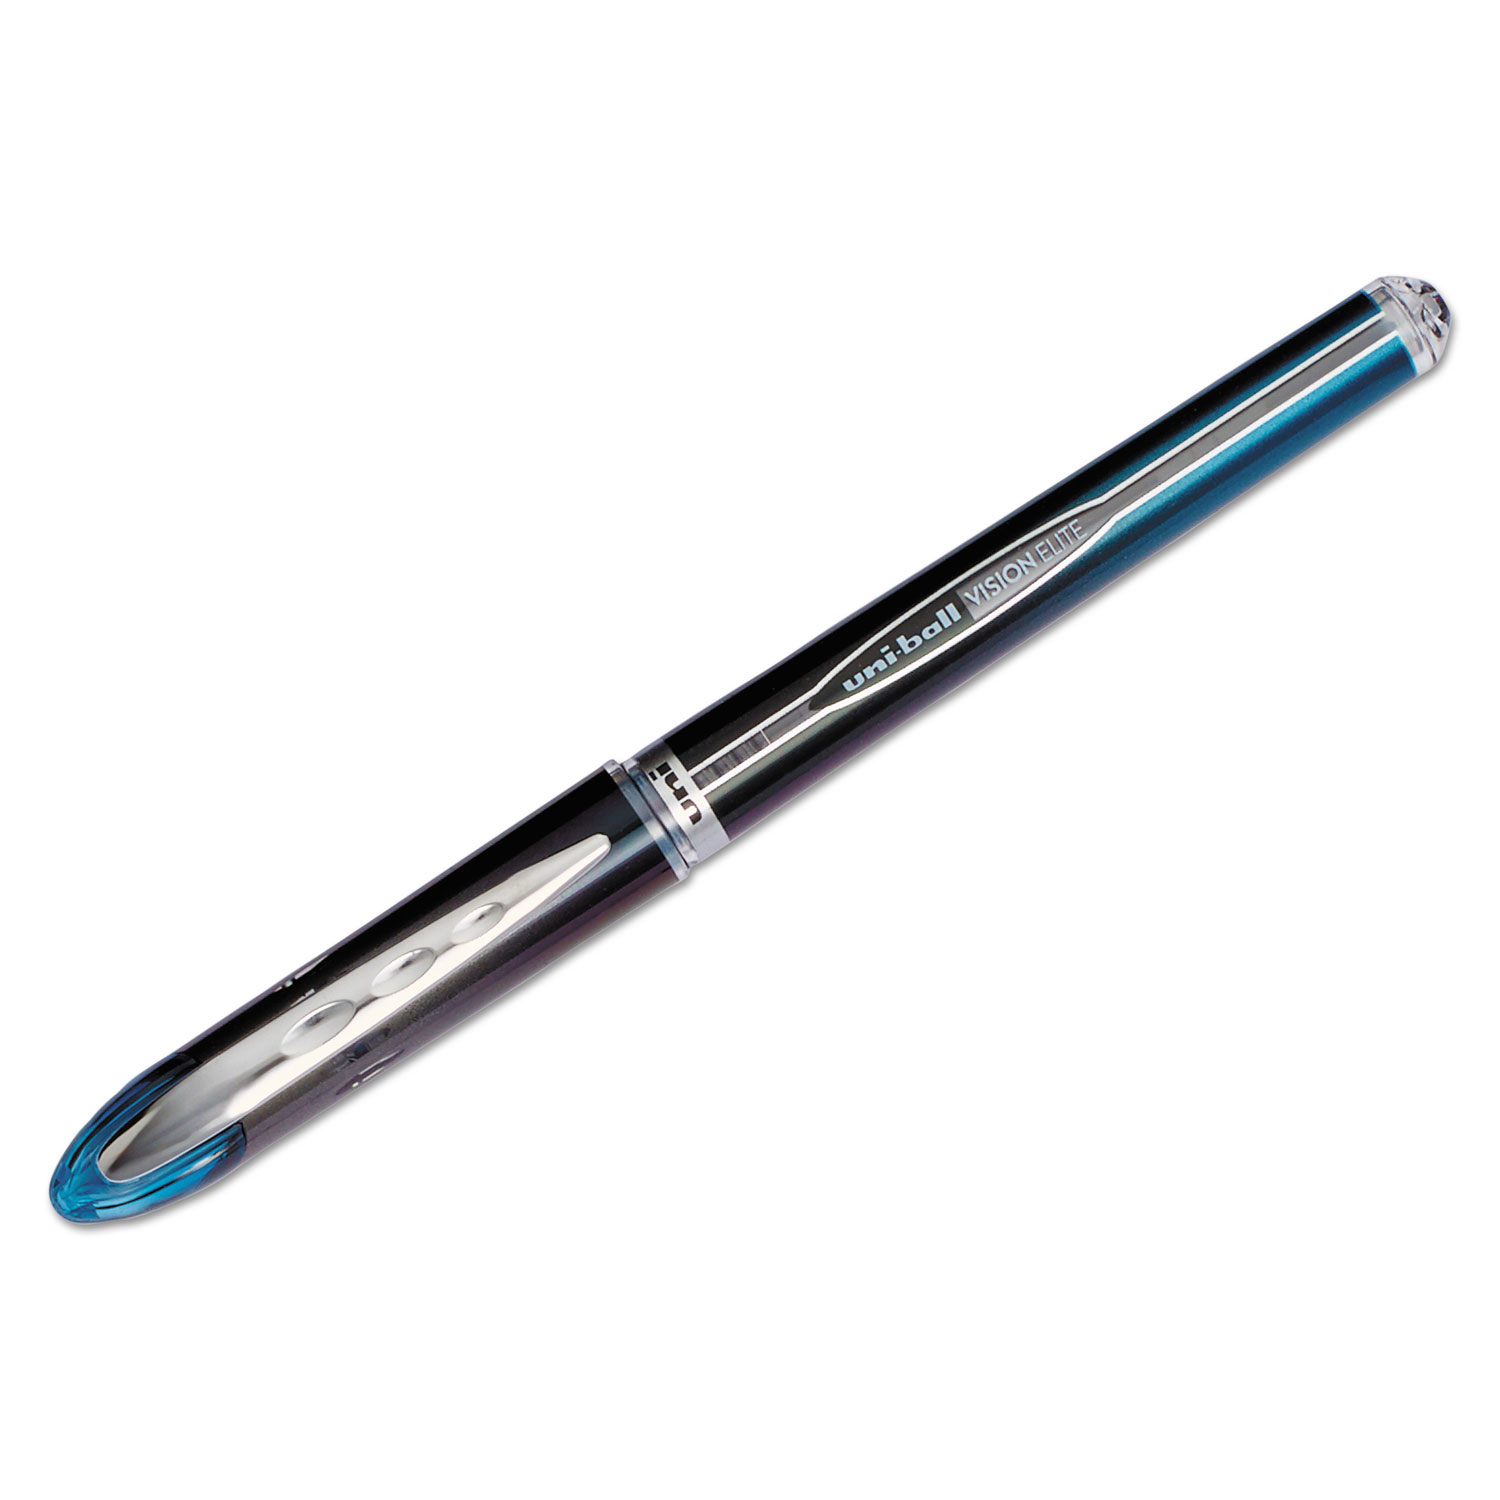  uni-ball 69020 VISION ELITE Stick Roller Ball Pen, 0.5mm, Blue-Black Ink, Black/Blue Barrel (UBC69020) 